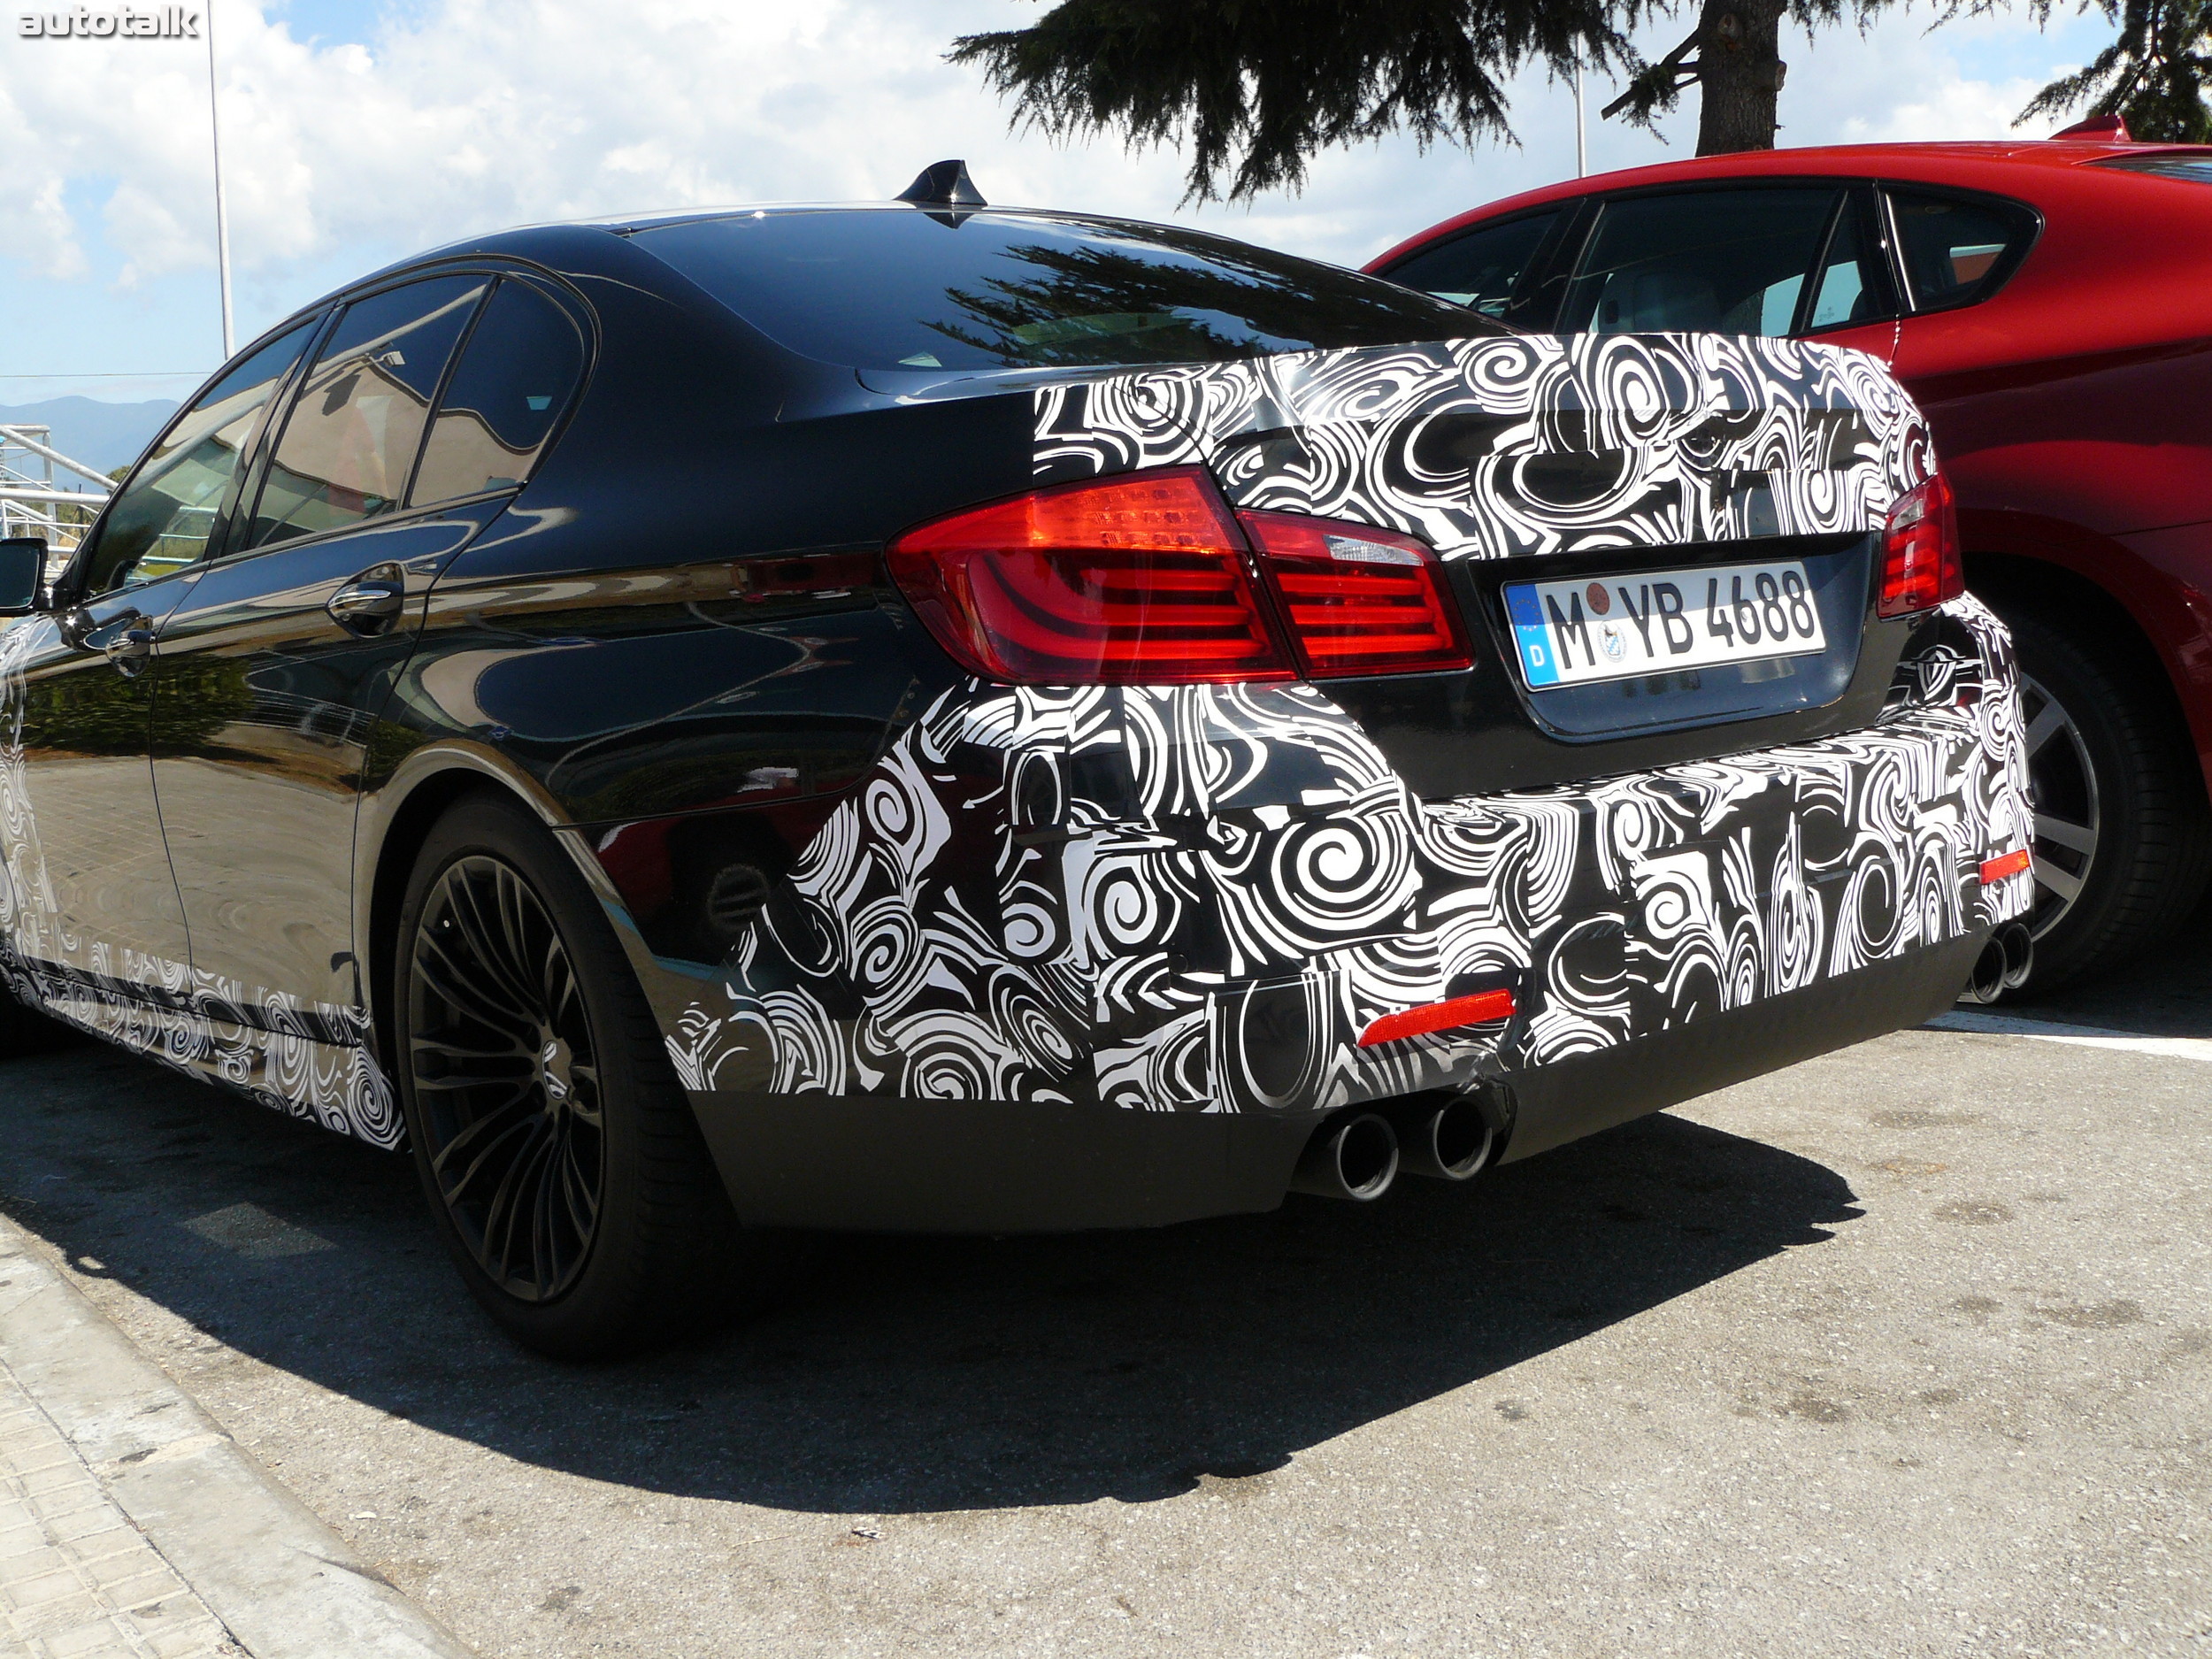 2012 BMW M5 Spy Shots